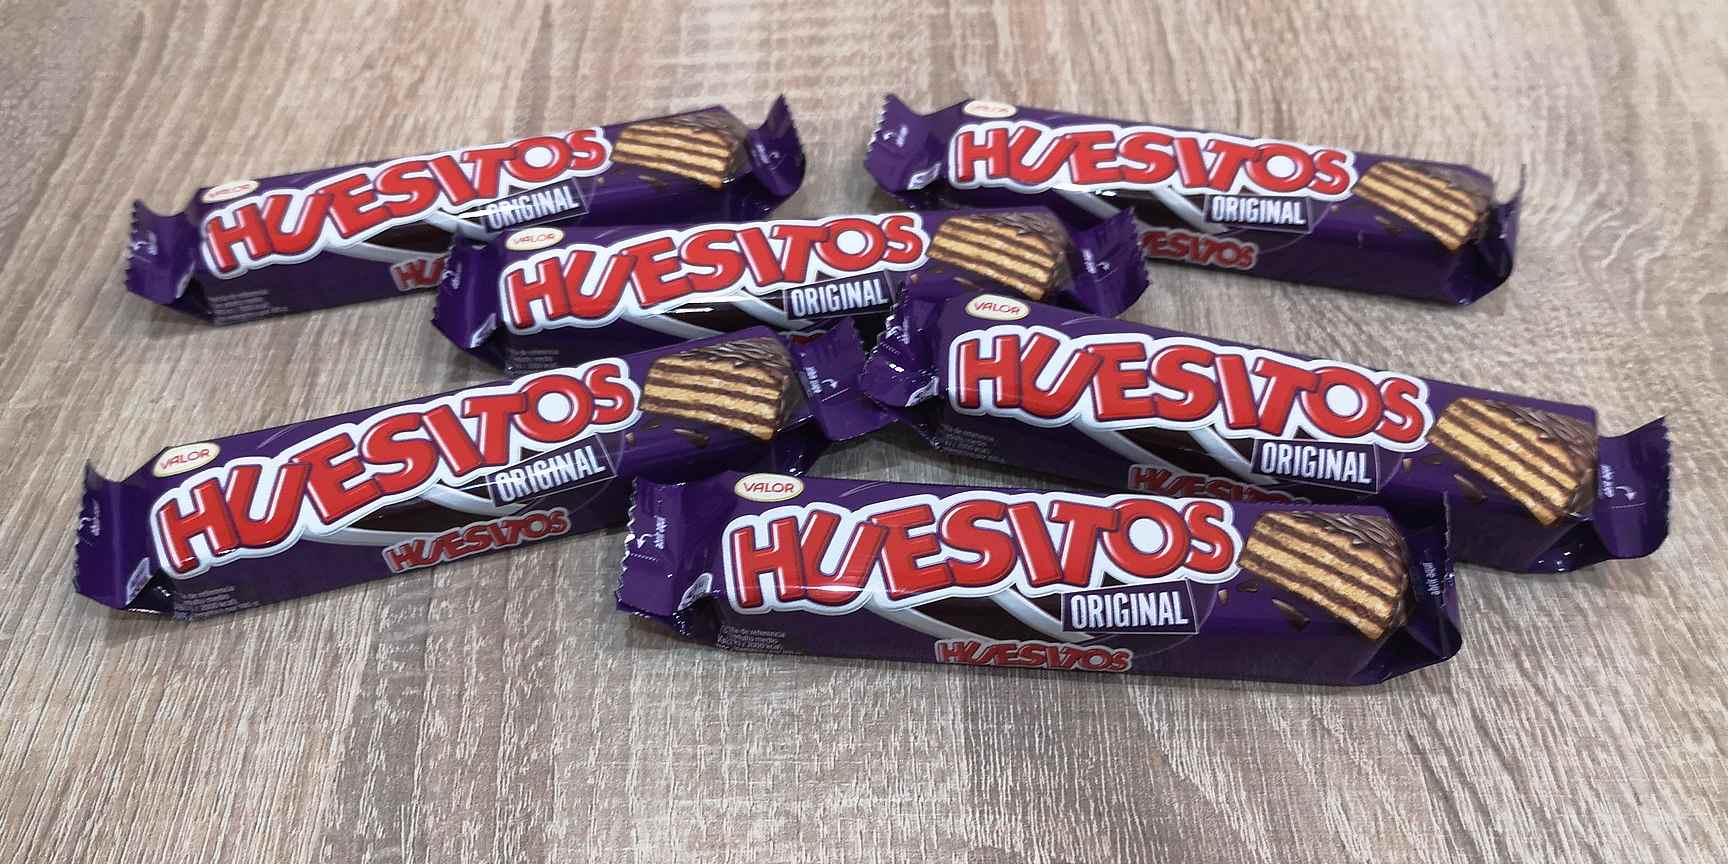 Huesitos, la historia de la marca chocolatera que fue proveedora de la Casa Real